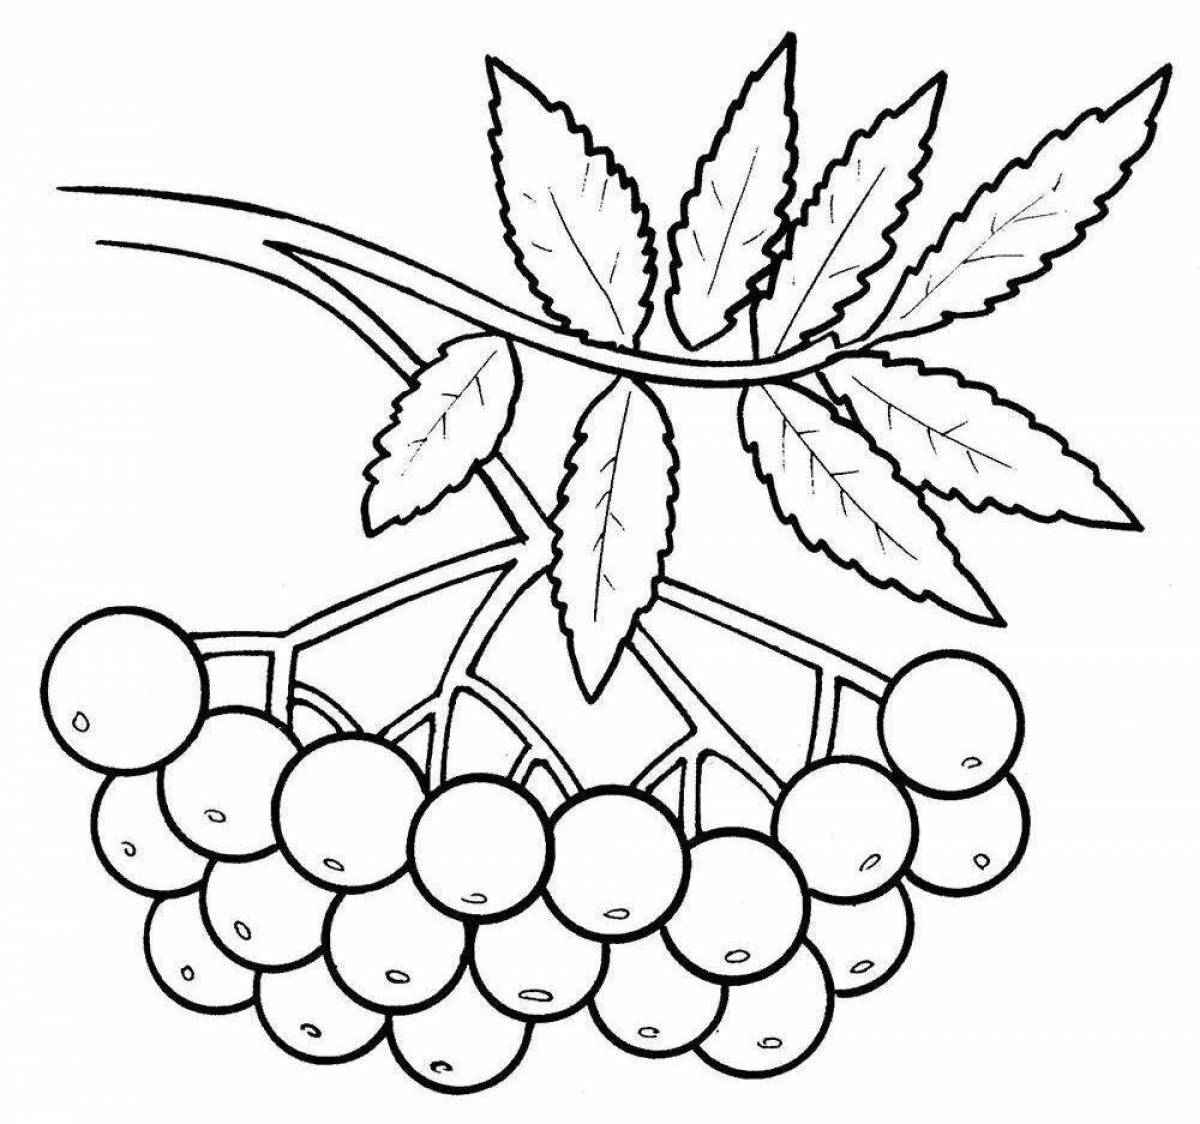 Coloring page joyful rowan berries